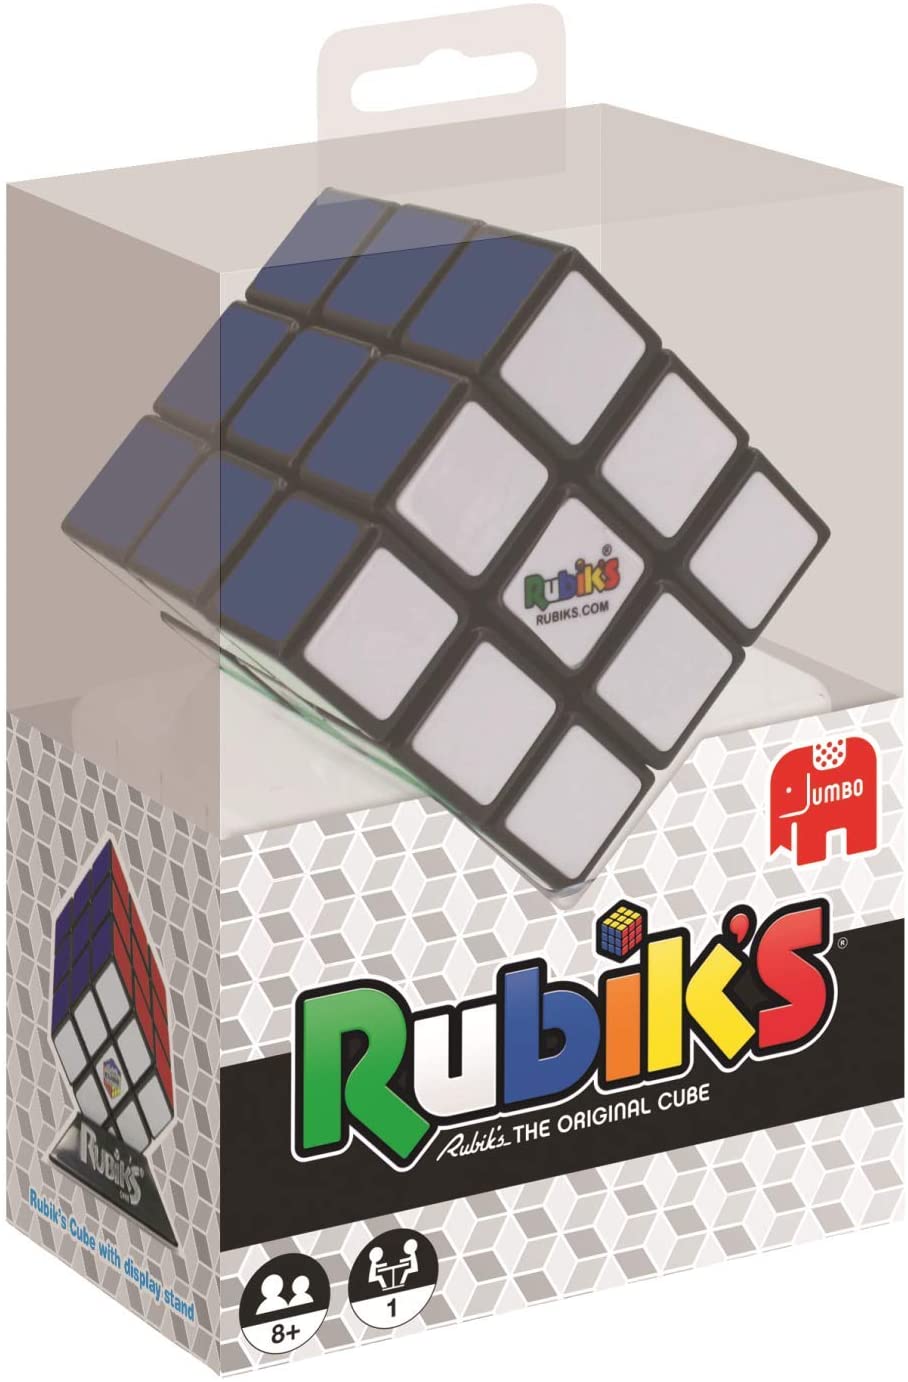 GAMES CUBO DI RUBIK / RUBIK'S CUBE (3X3) JUMBO